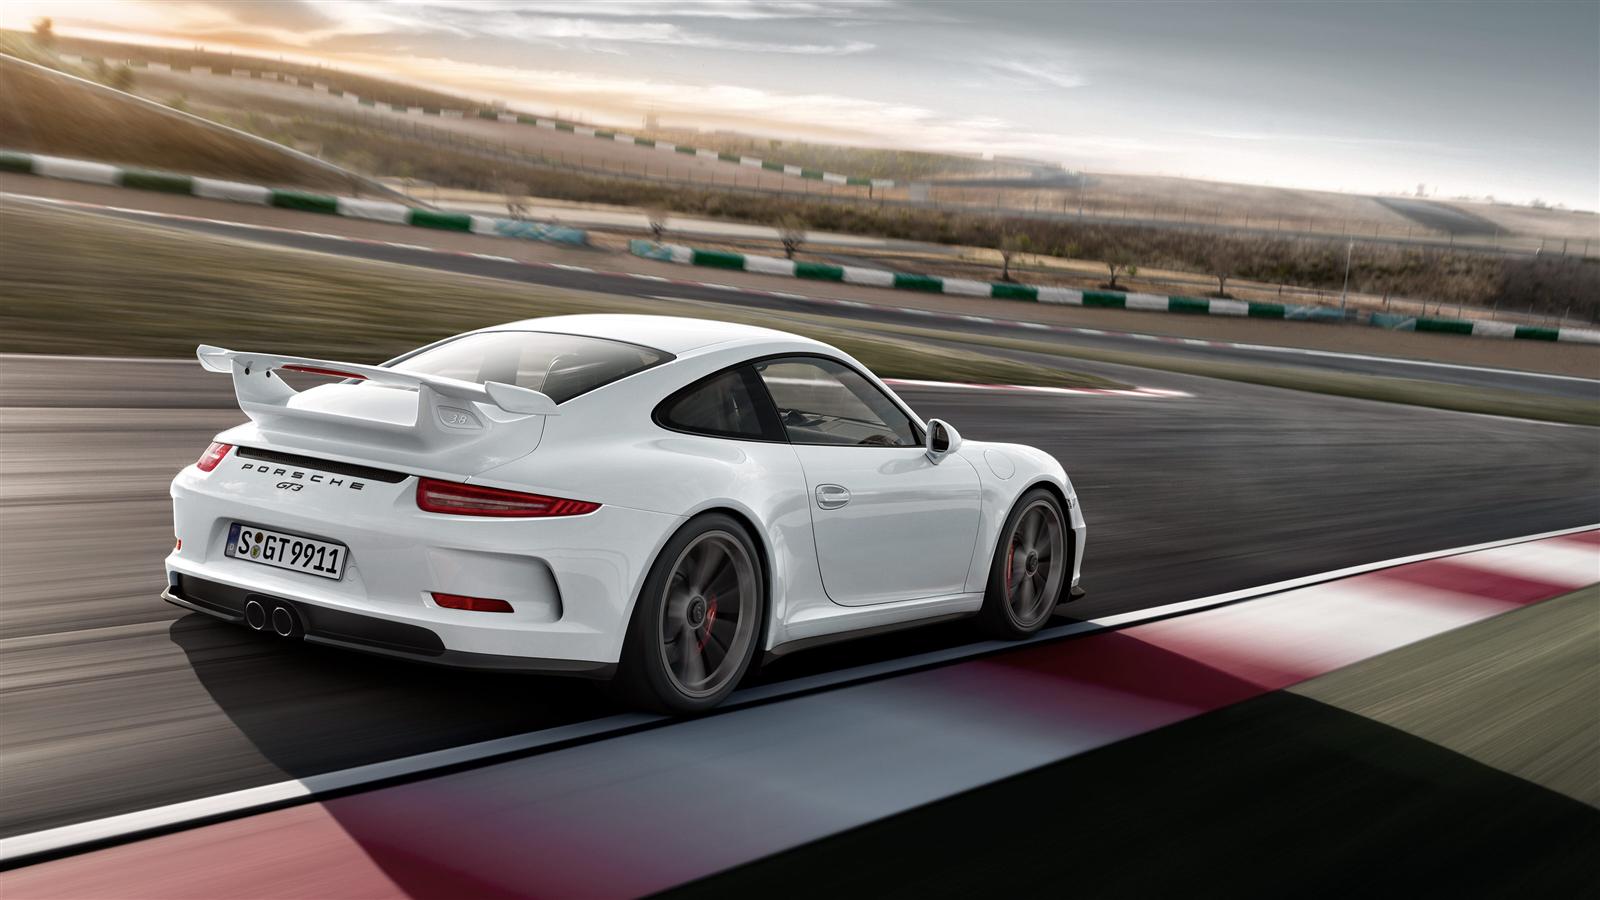 Porsche Gt3 Wallpaper Image